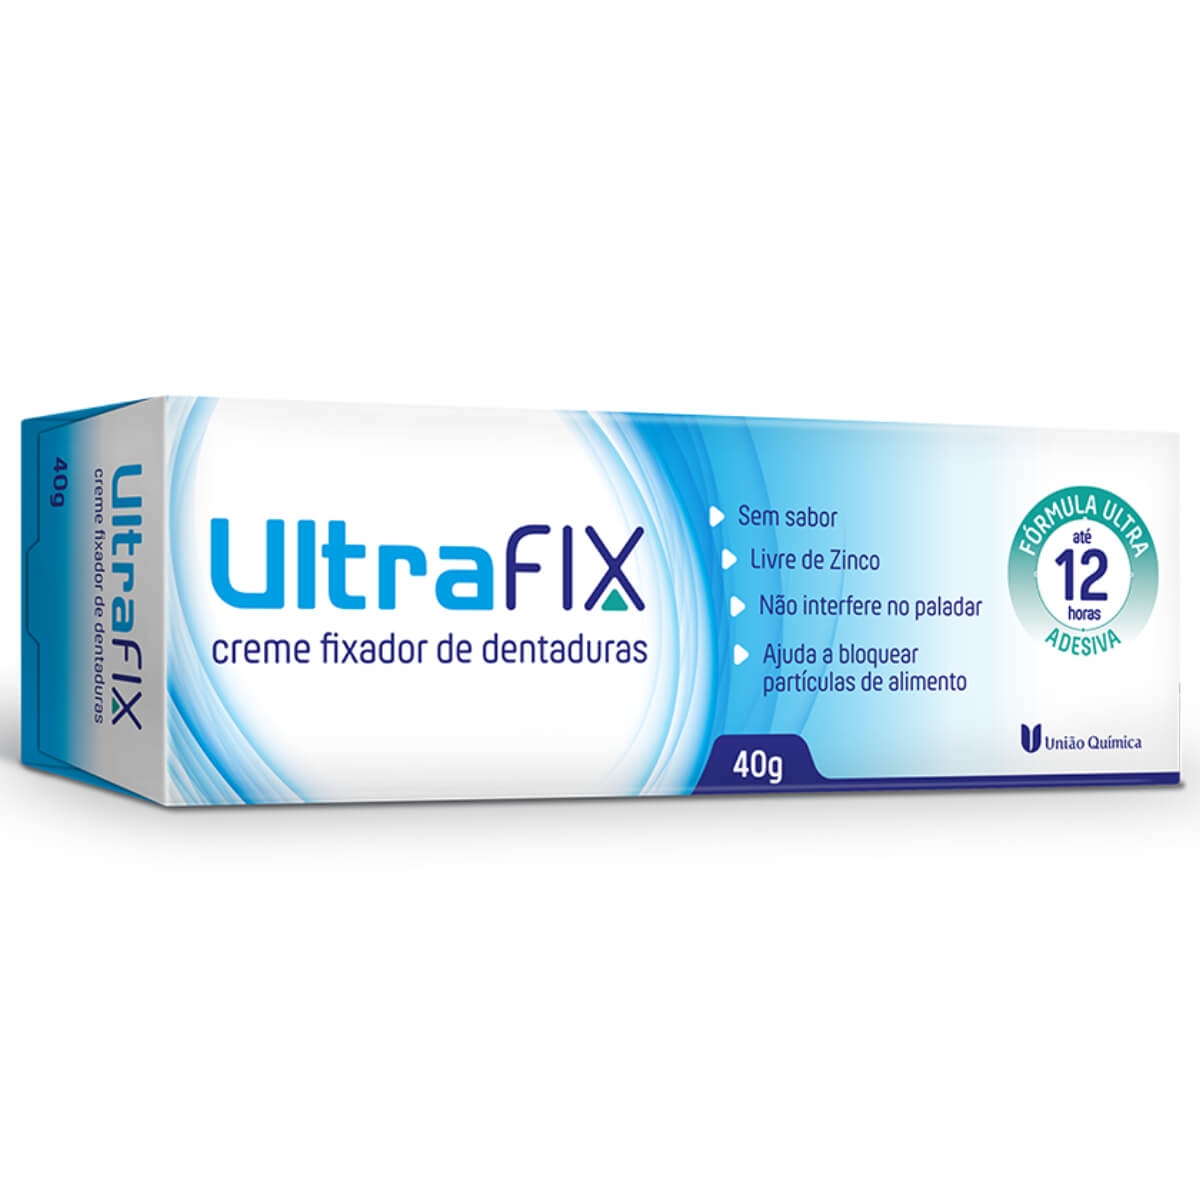 Creme Fixador de Dentadura UltraFix Sem Sabor União Química 40g